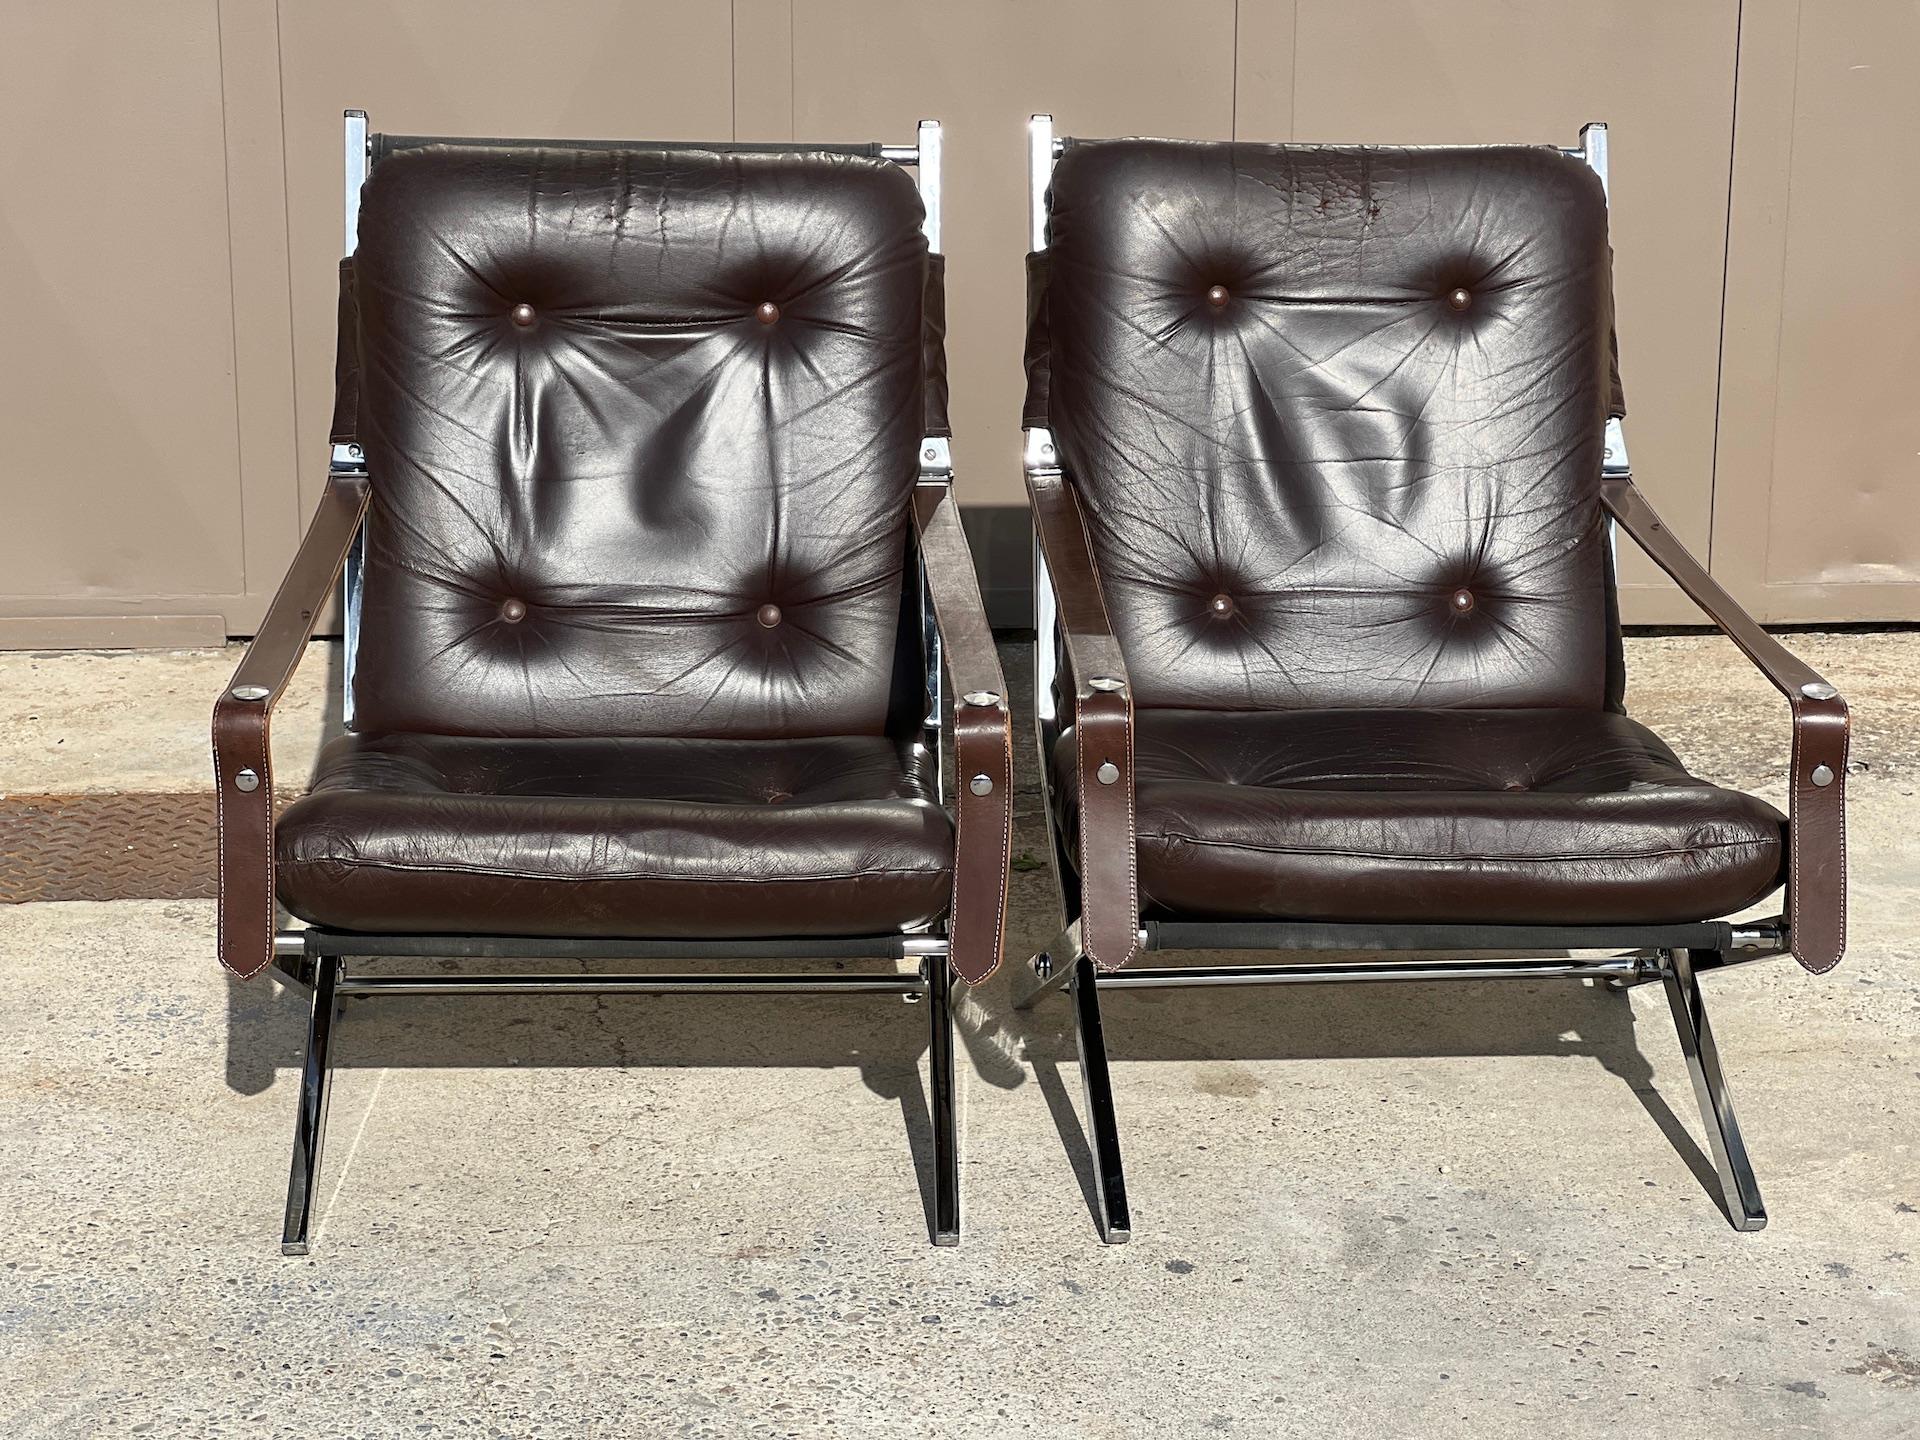 Paire de fauteuils pliants de Robert Duran 1970. La structure est en métal chromé. L'assise et le dossier sont en cuir chocolat. Accoudoirs avec sangles en cuir réglables. En bon état, le cuir a une belle patine.